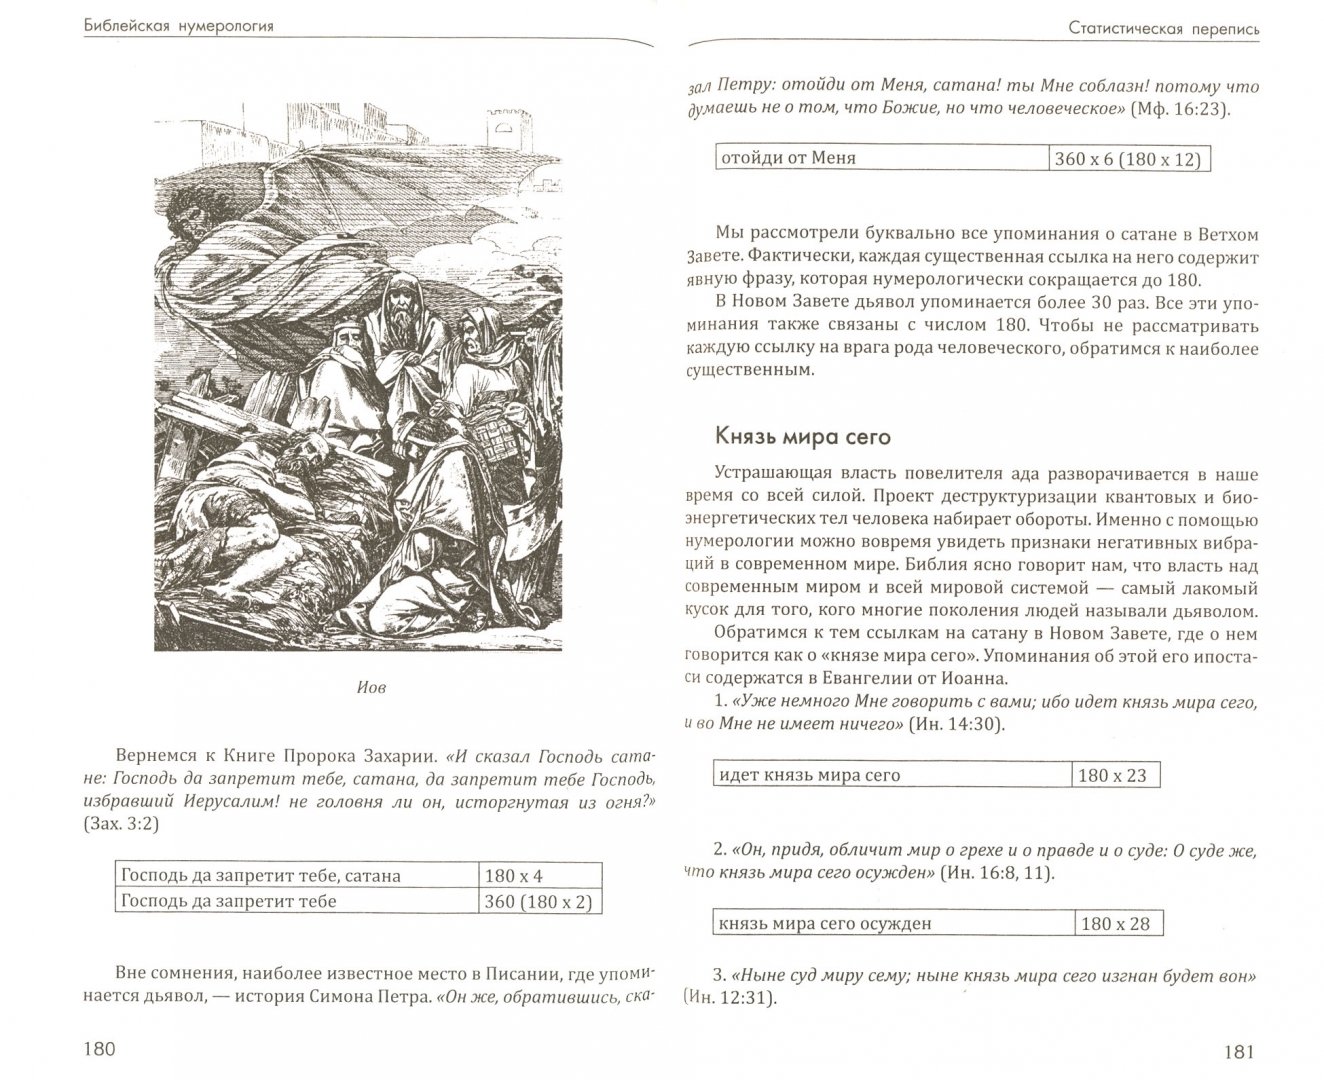 Иллюстрация 1 из 11 для Библейская нумерология - Неаполитанский, Матвеев | Лабиринт - книги. Источник: Лабиринт